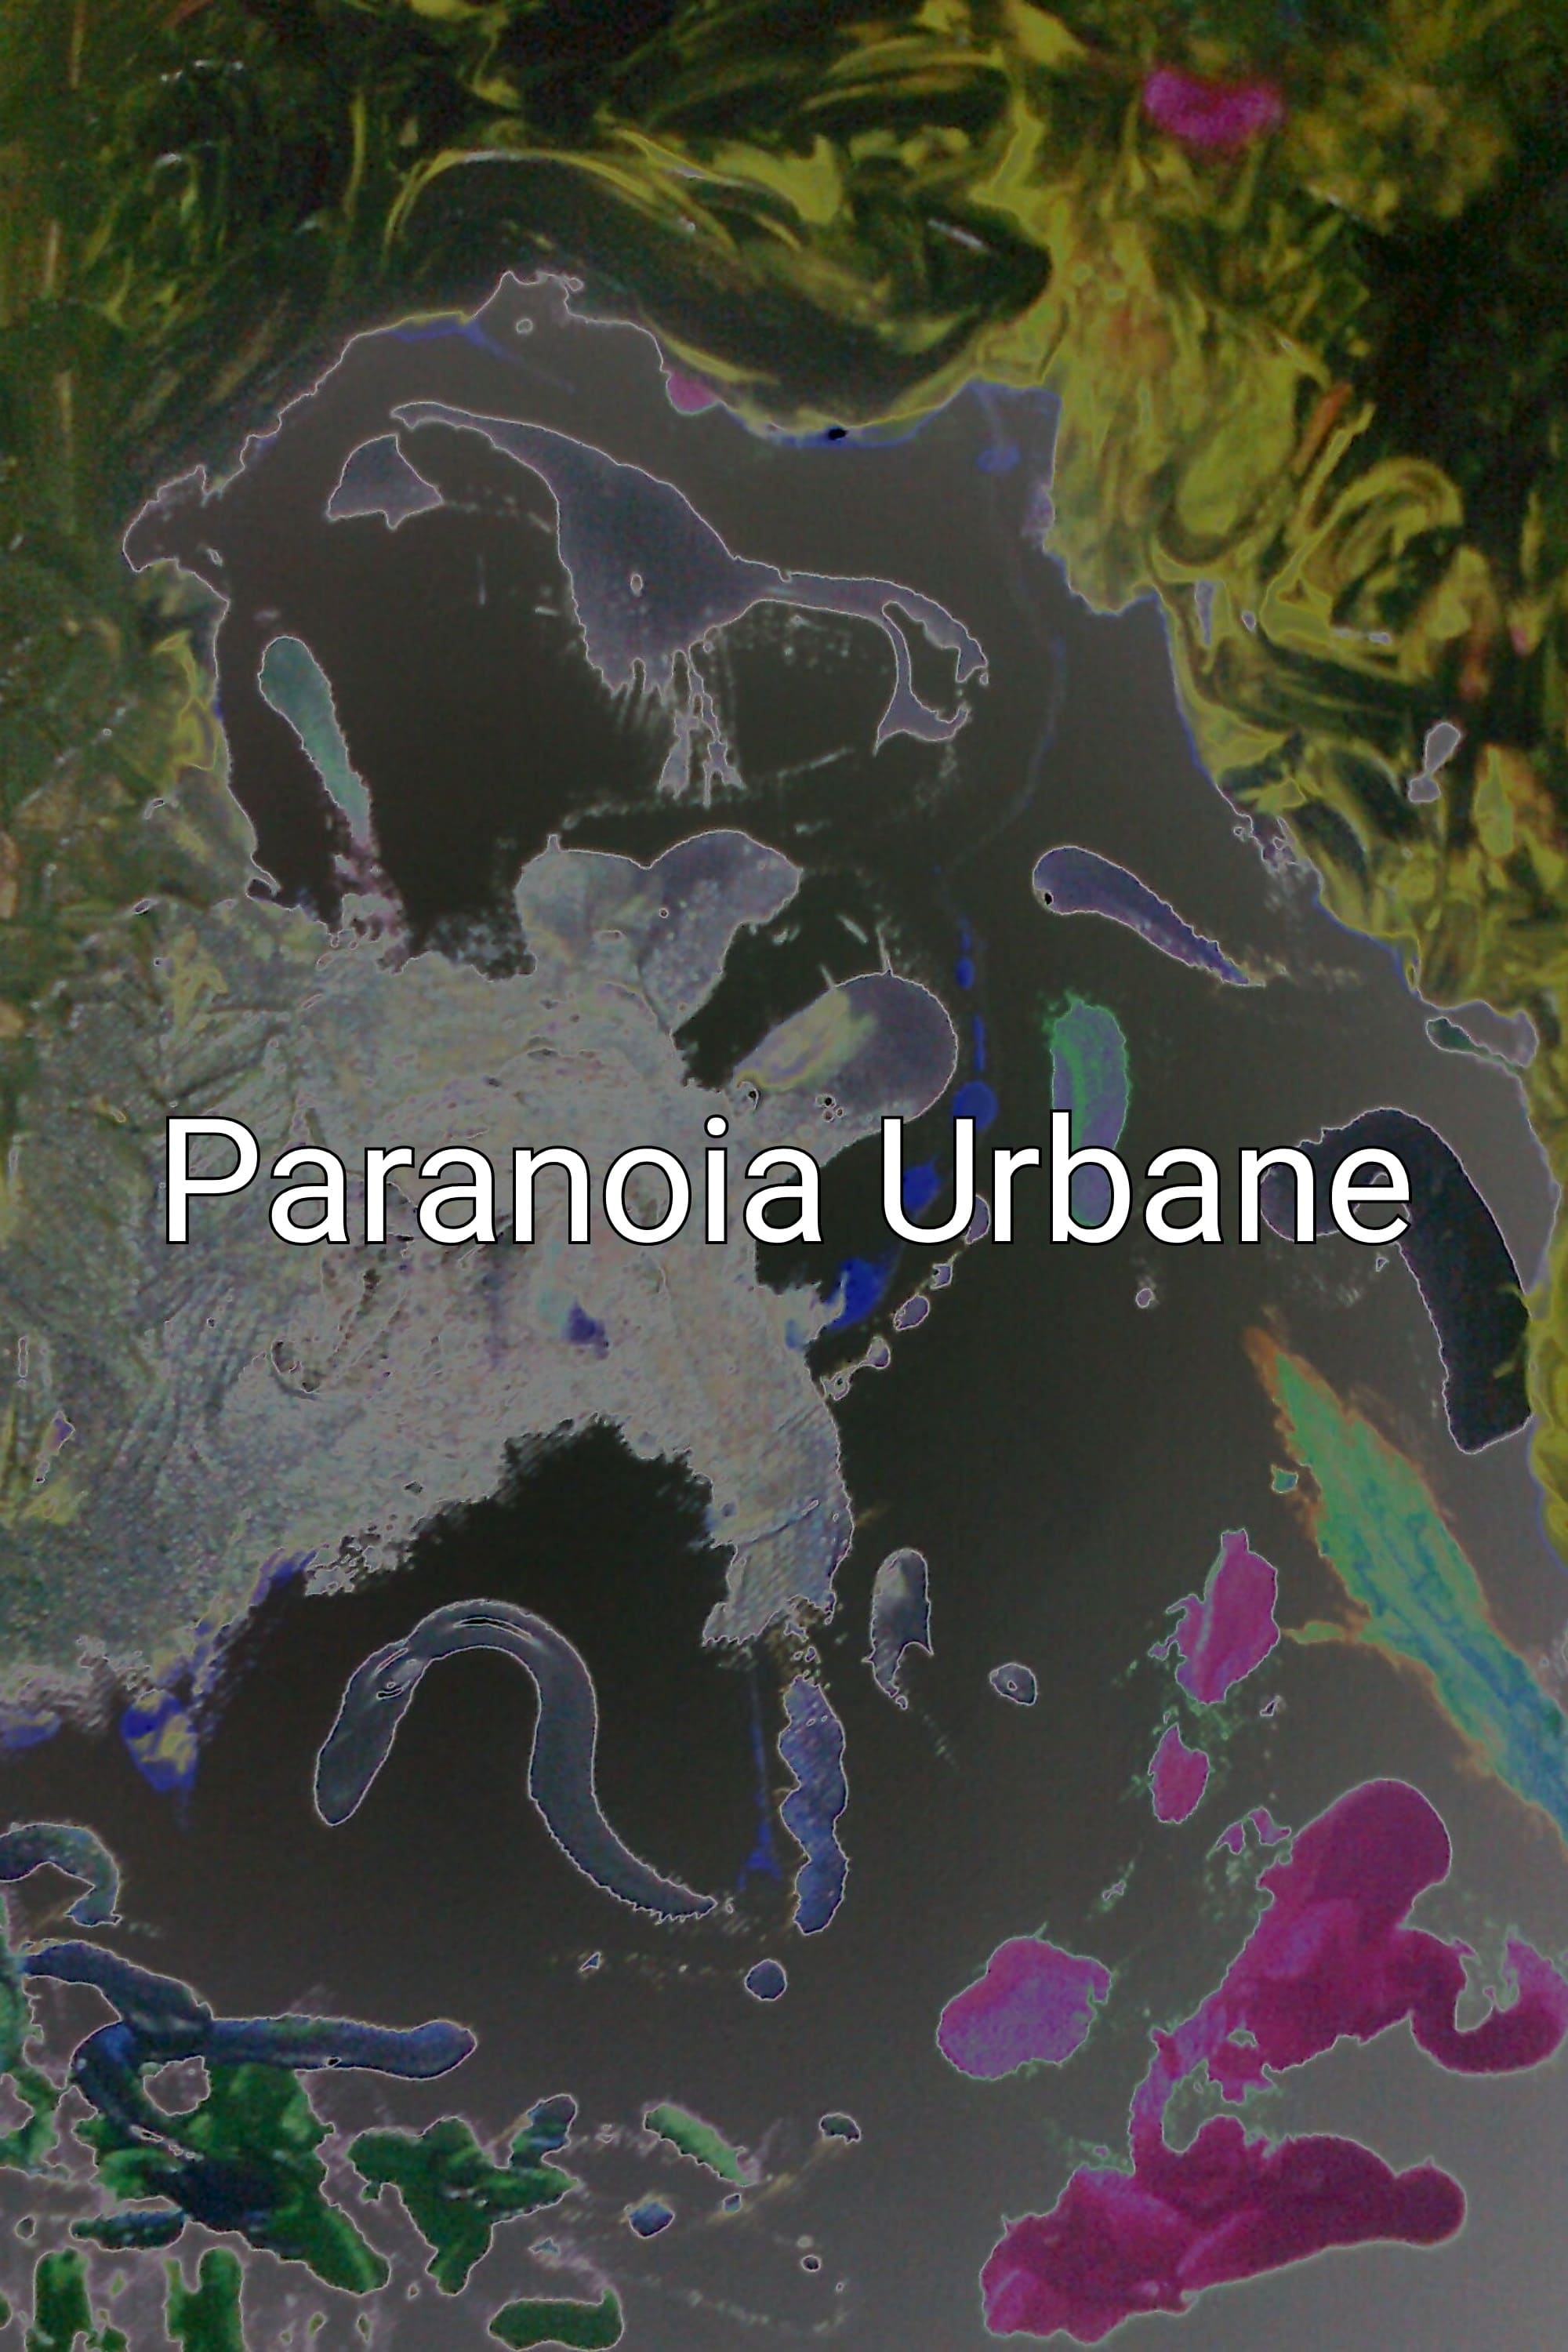 Urban Paranoia